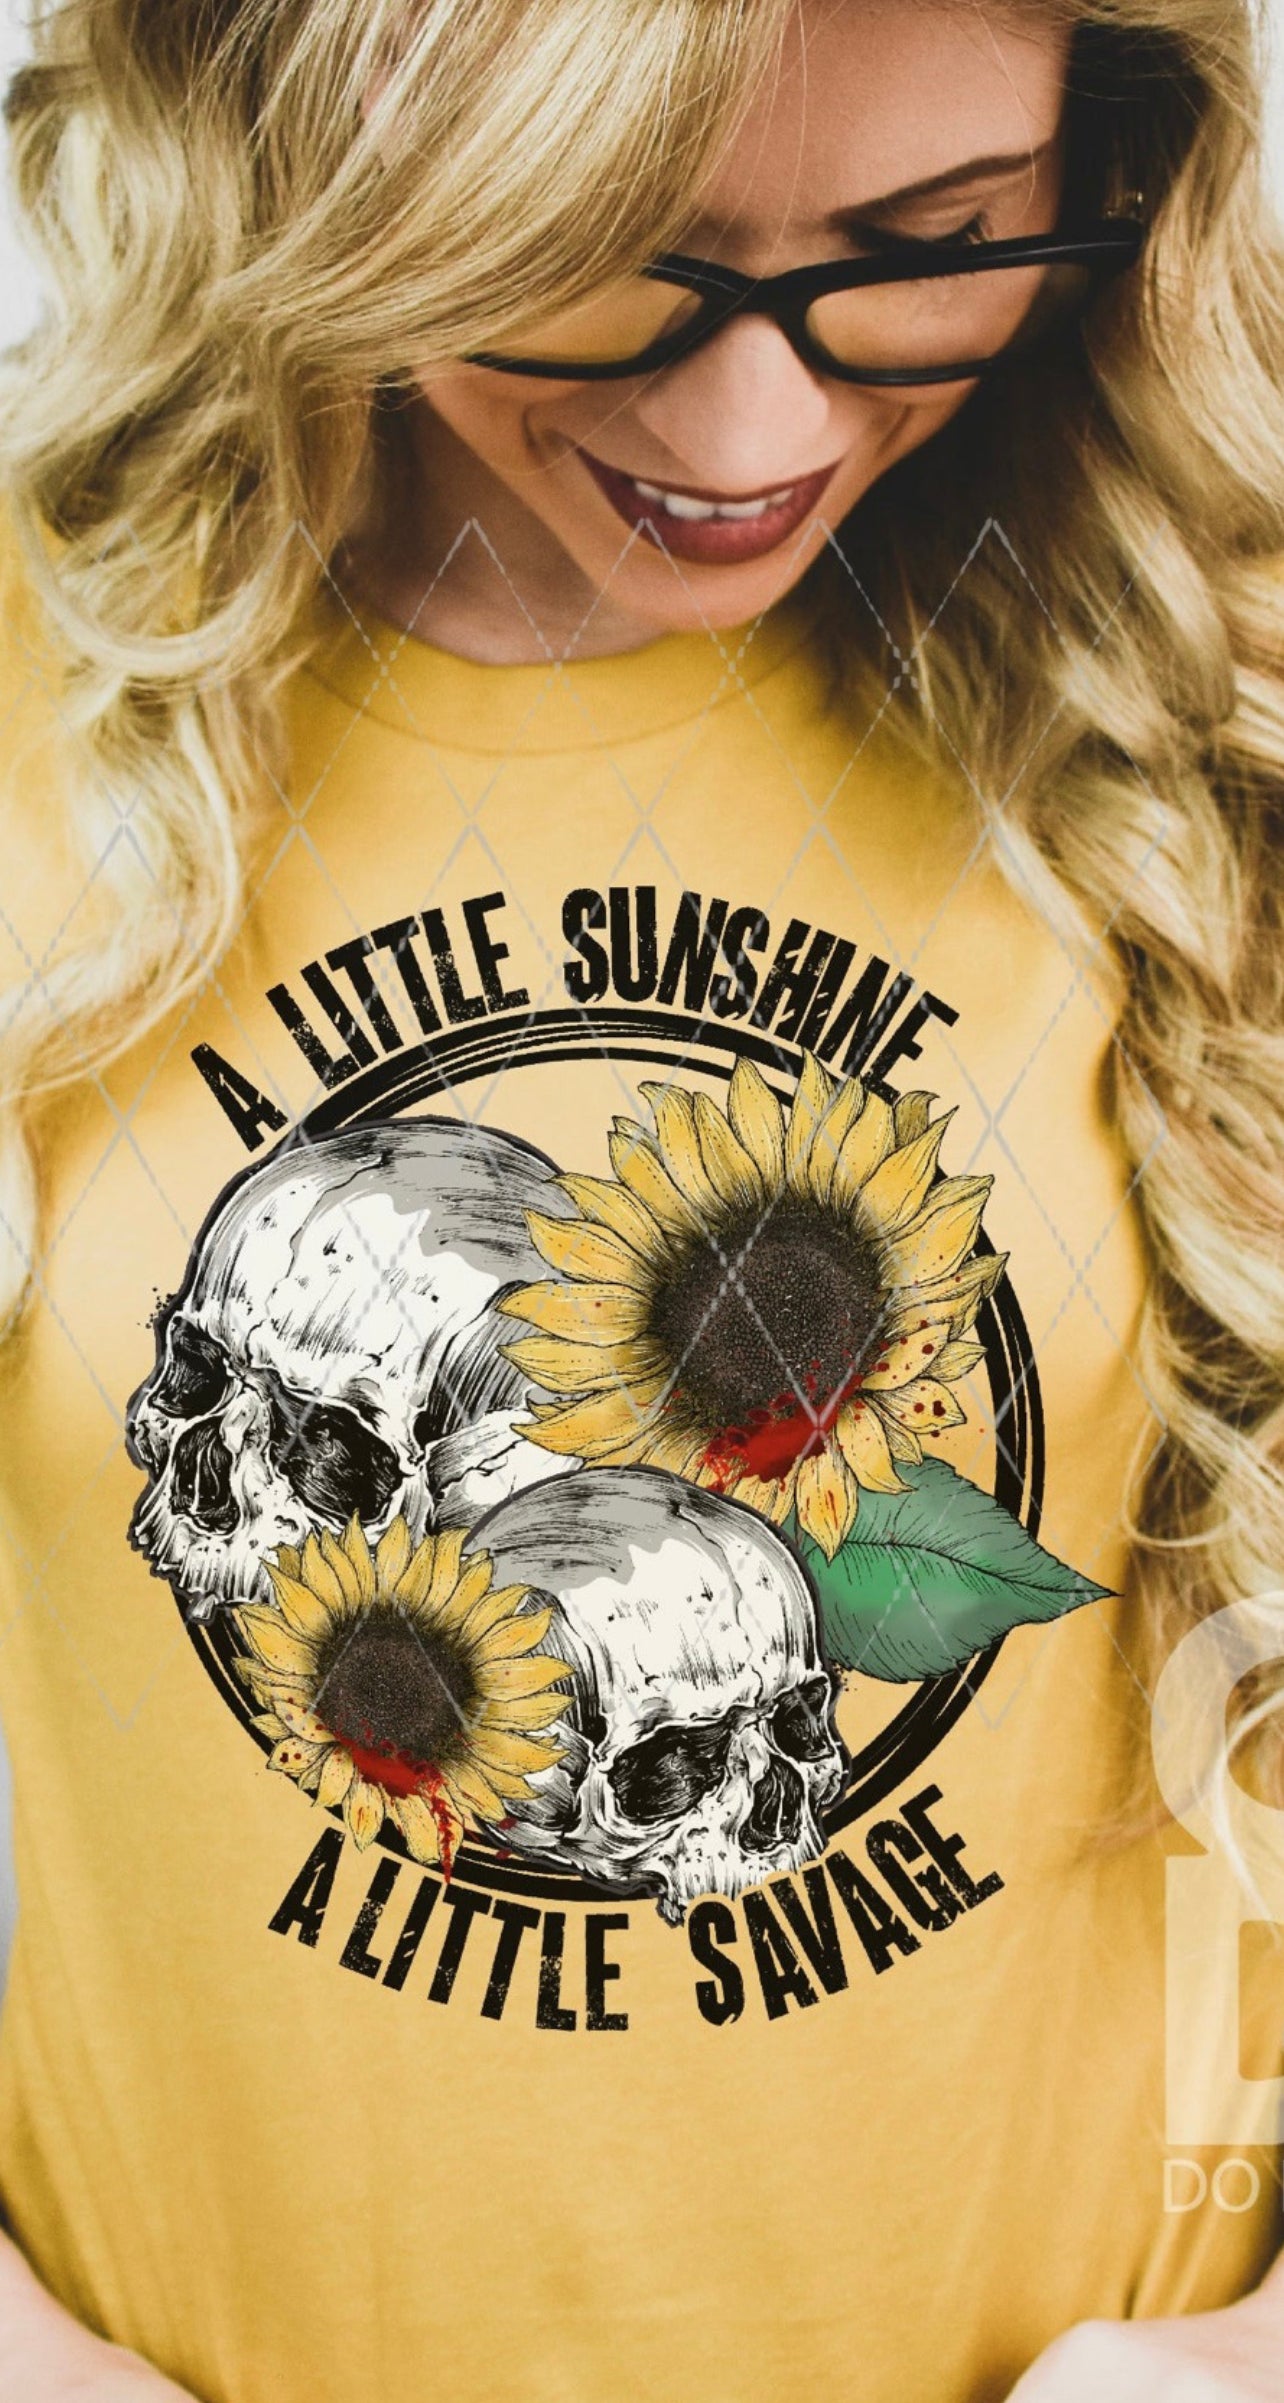 A little Sunshine - AnnRose Boutique